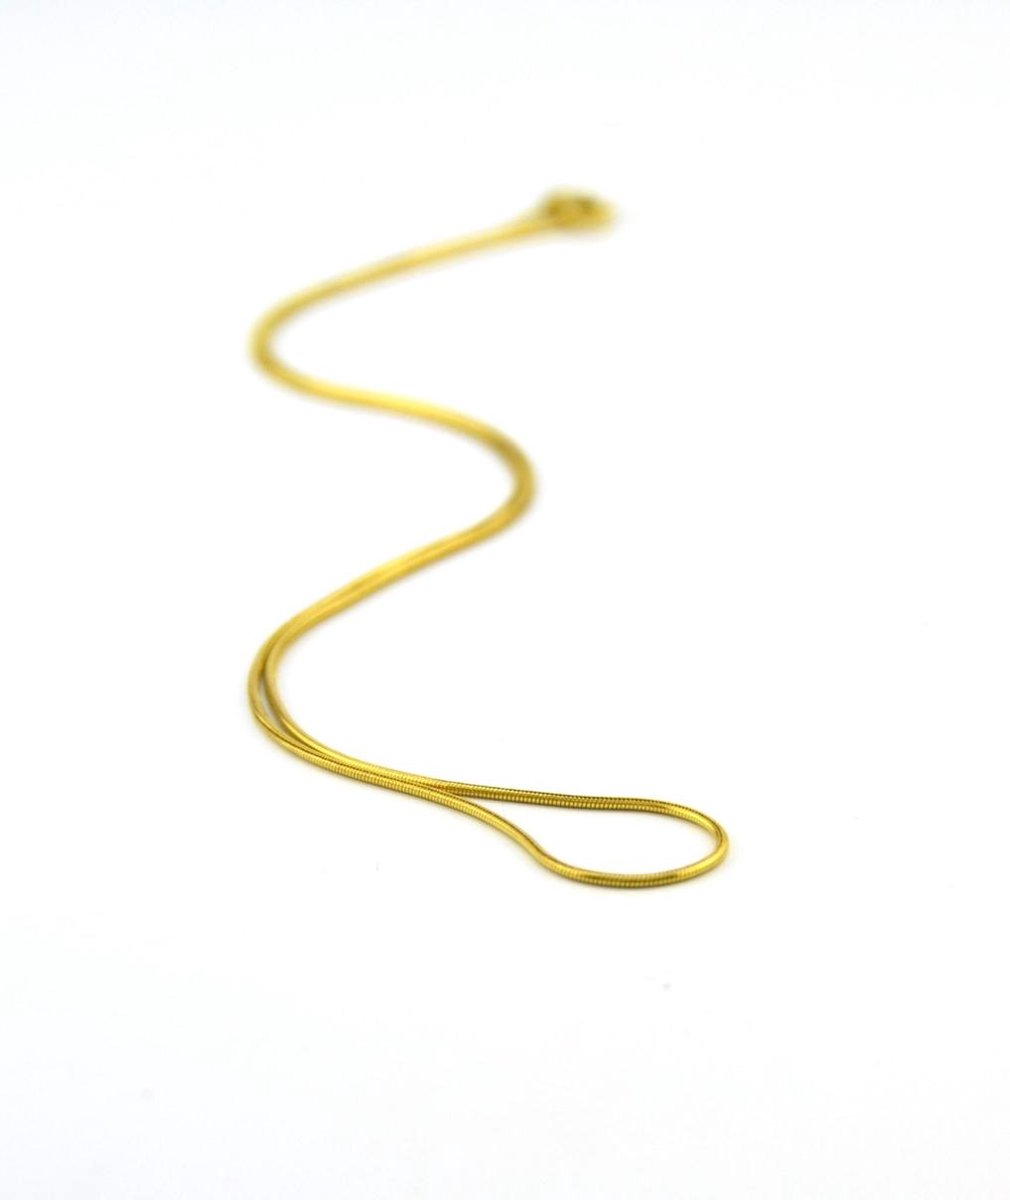 Tomylo 14 K geelgouden slangencollier 0.9 mm 42 cm